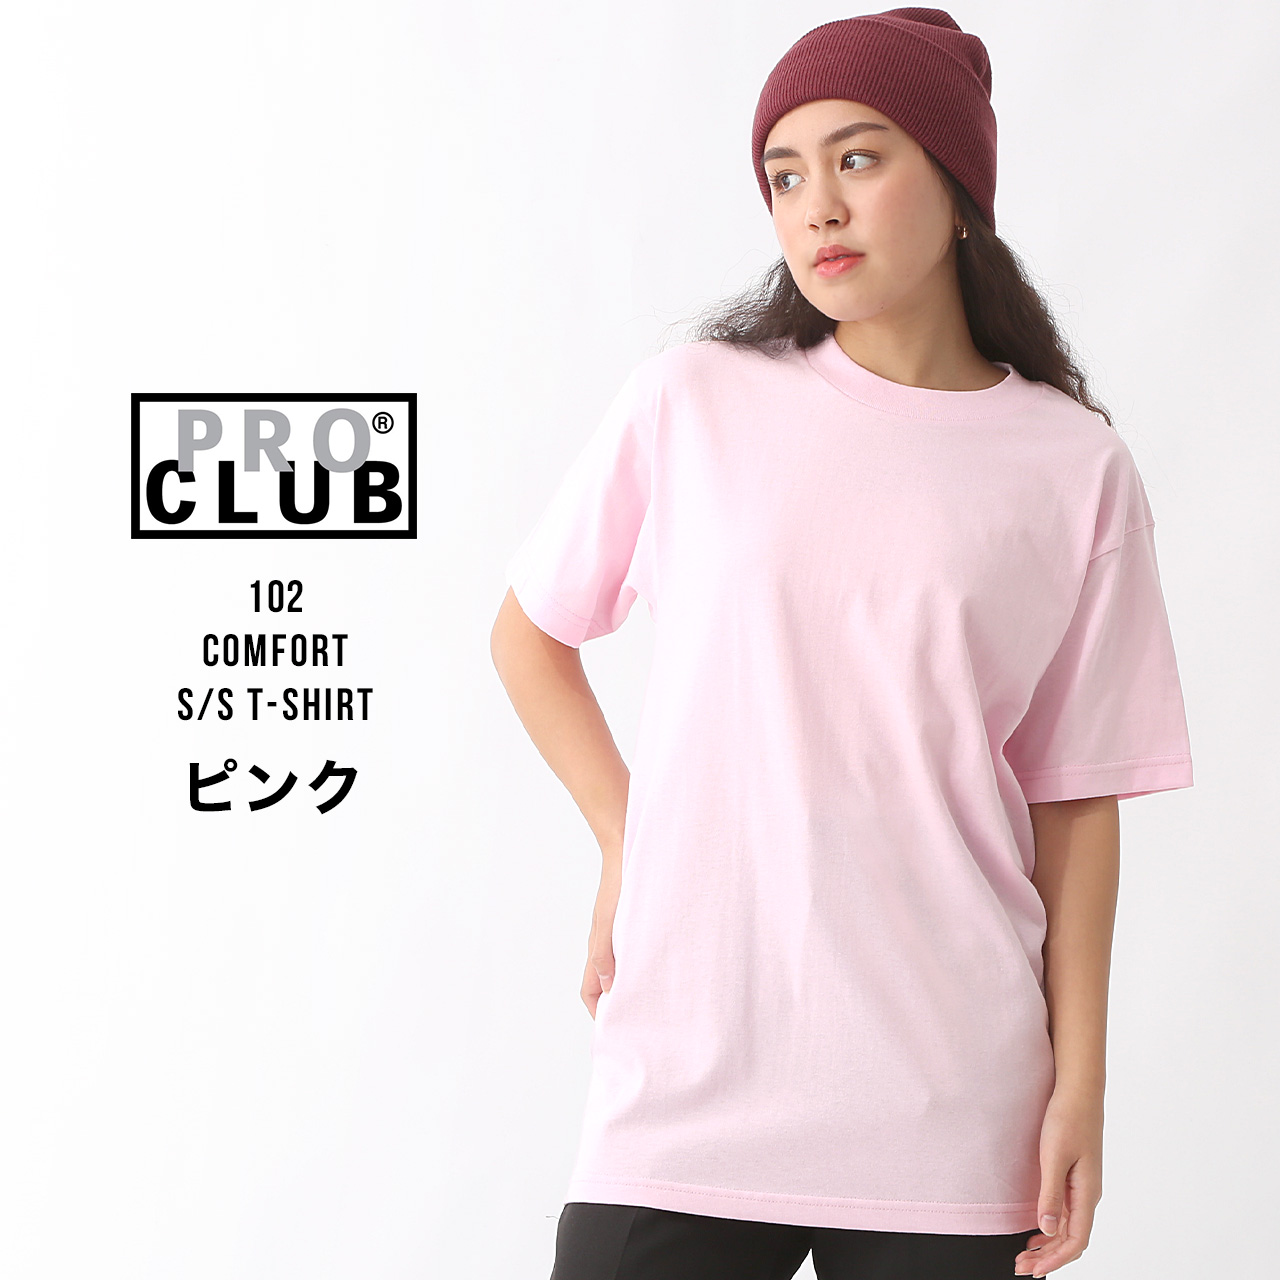 PRO CLUB プロクラブ tシャツ メンズ 半袖 コンフォートブランド 